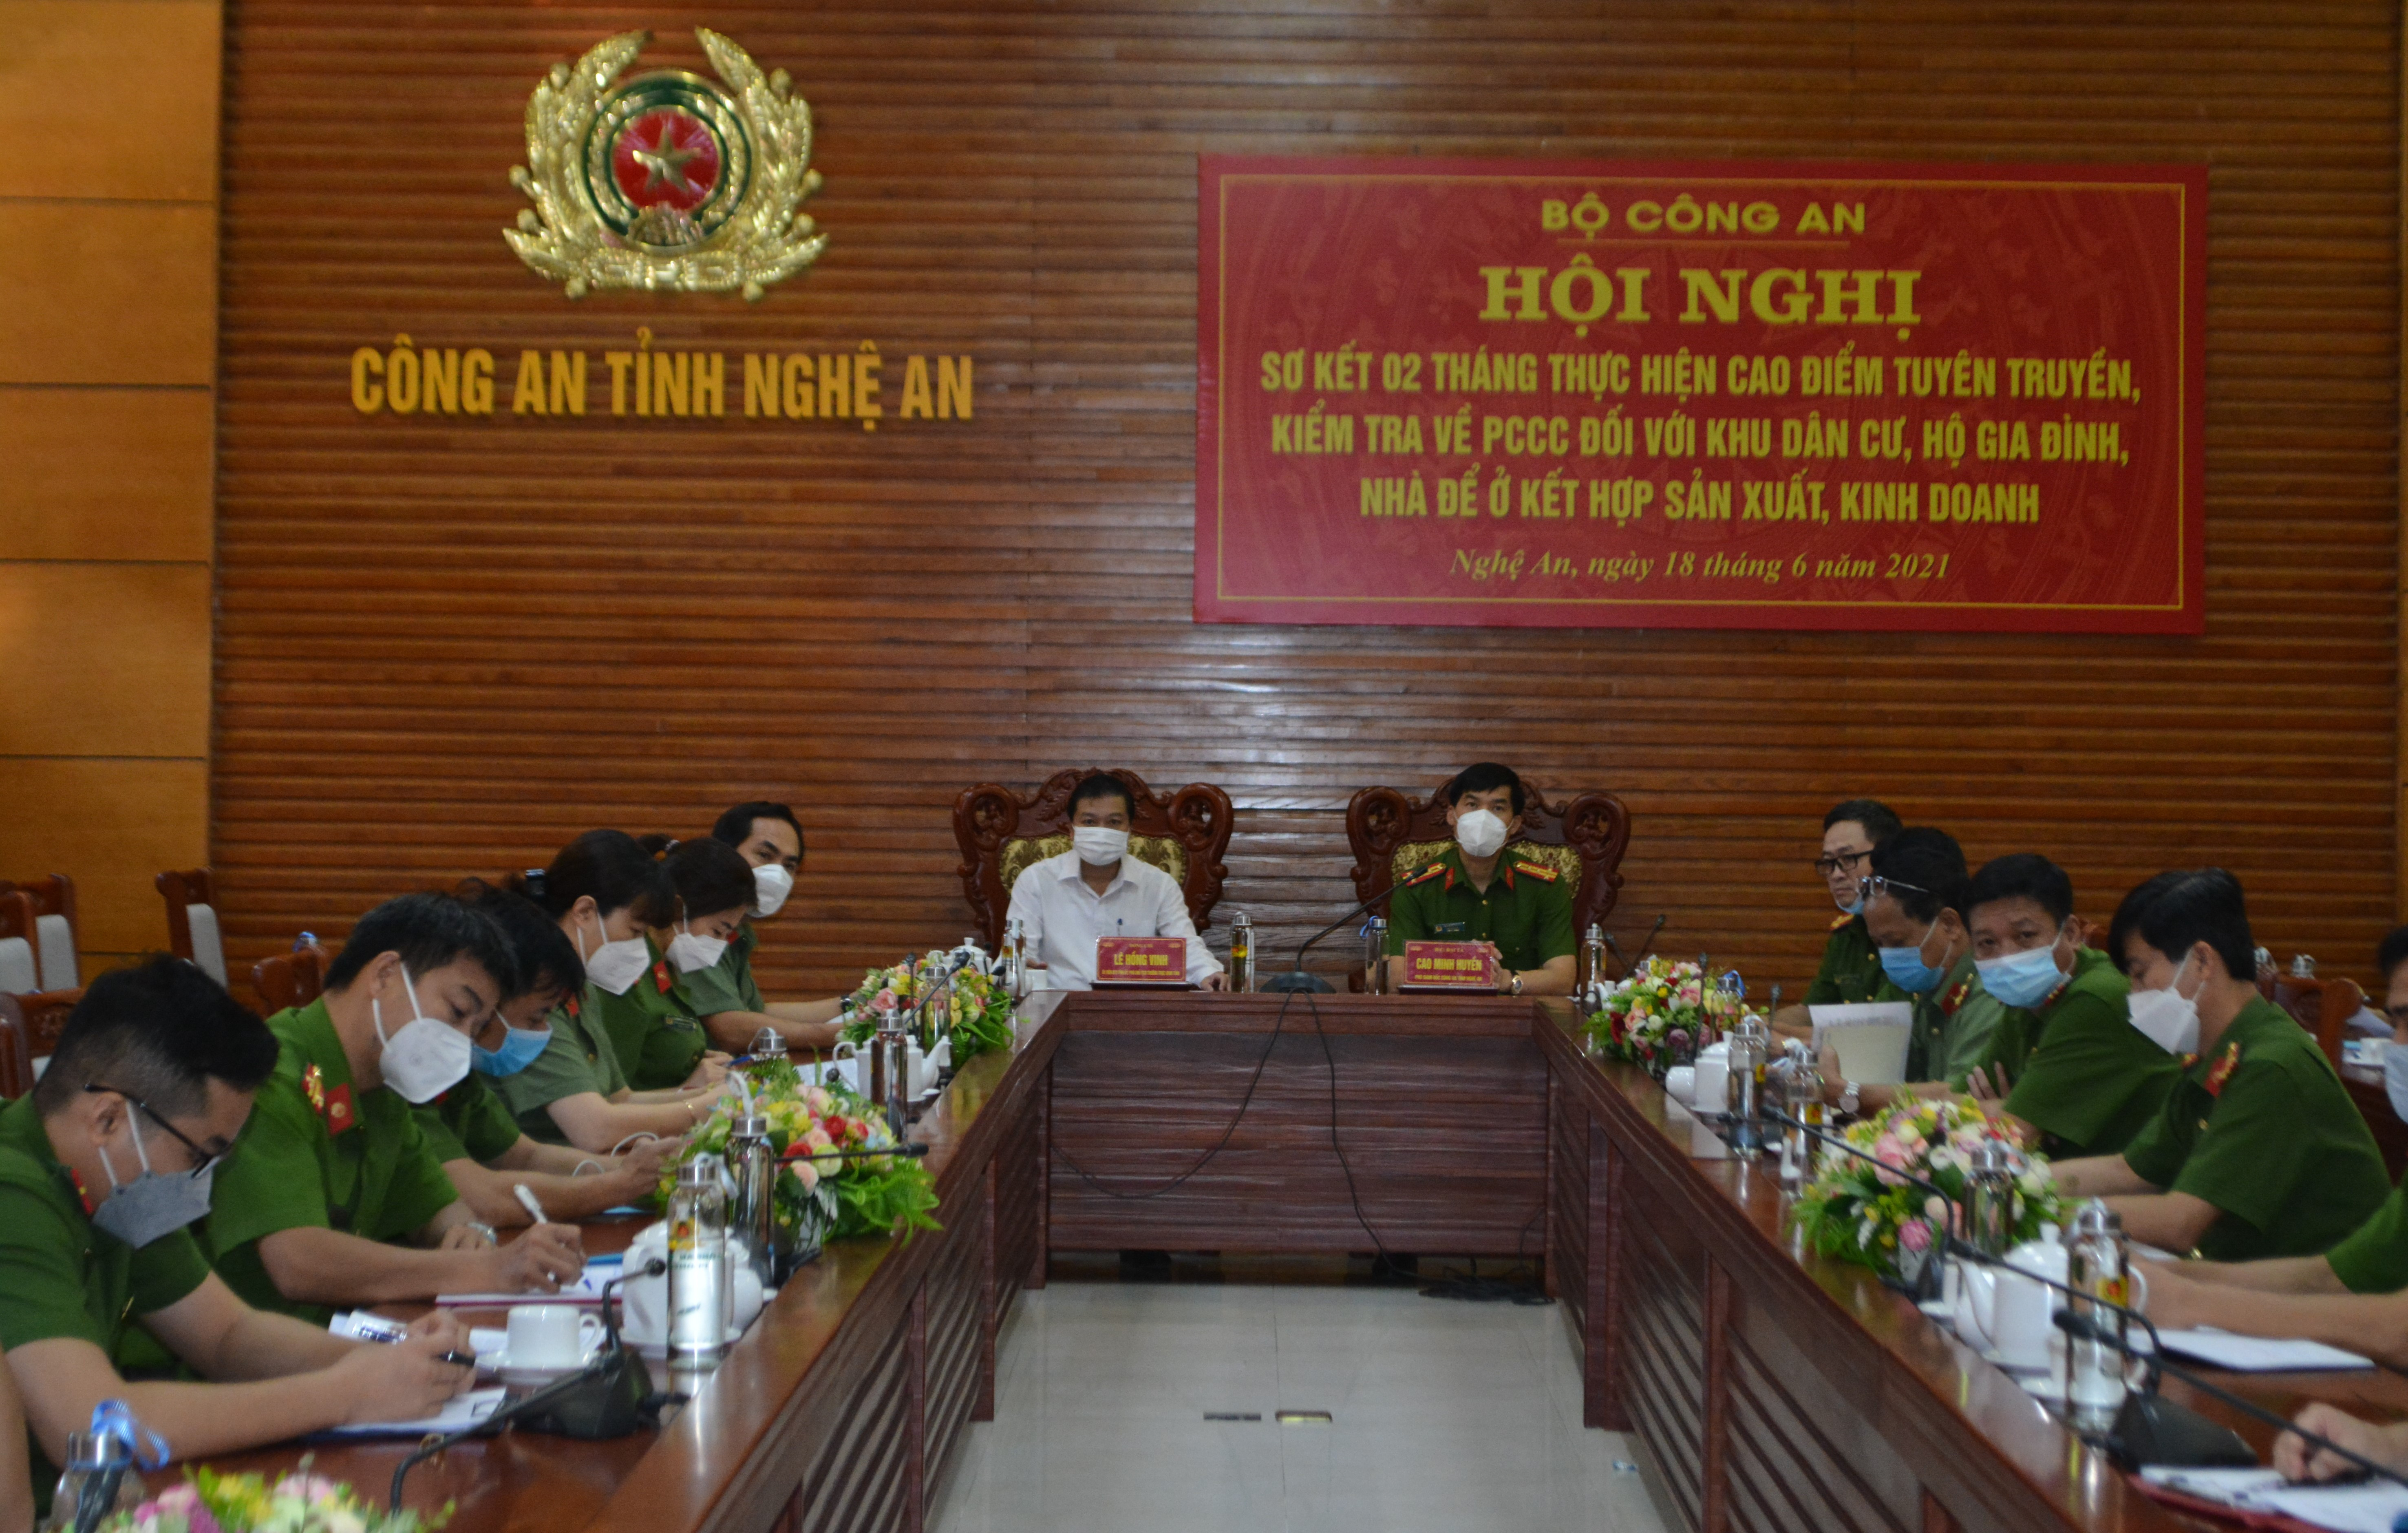 Tại điểm cầu Nghệ An, đồng chí Lê Hồng Vinh, Phó Chủ tịch UBND tỉnh cùng Đại tá Cao Minh Huyền, Phó Giám đốc Công an tỉnh và đại diện một số phòng cùng tham dự.